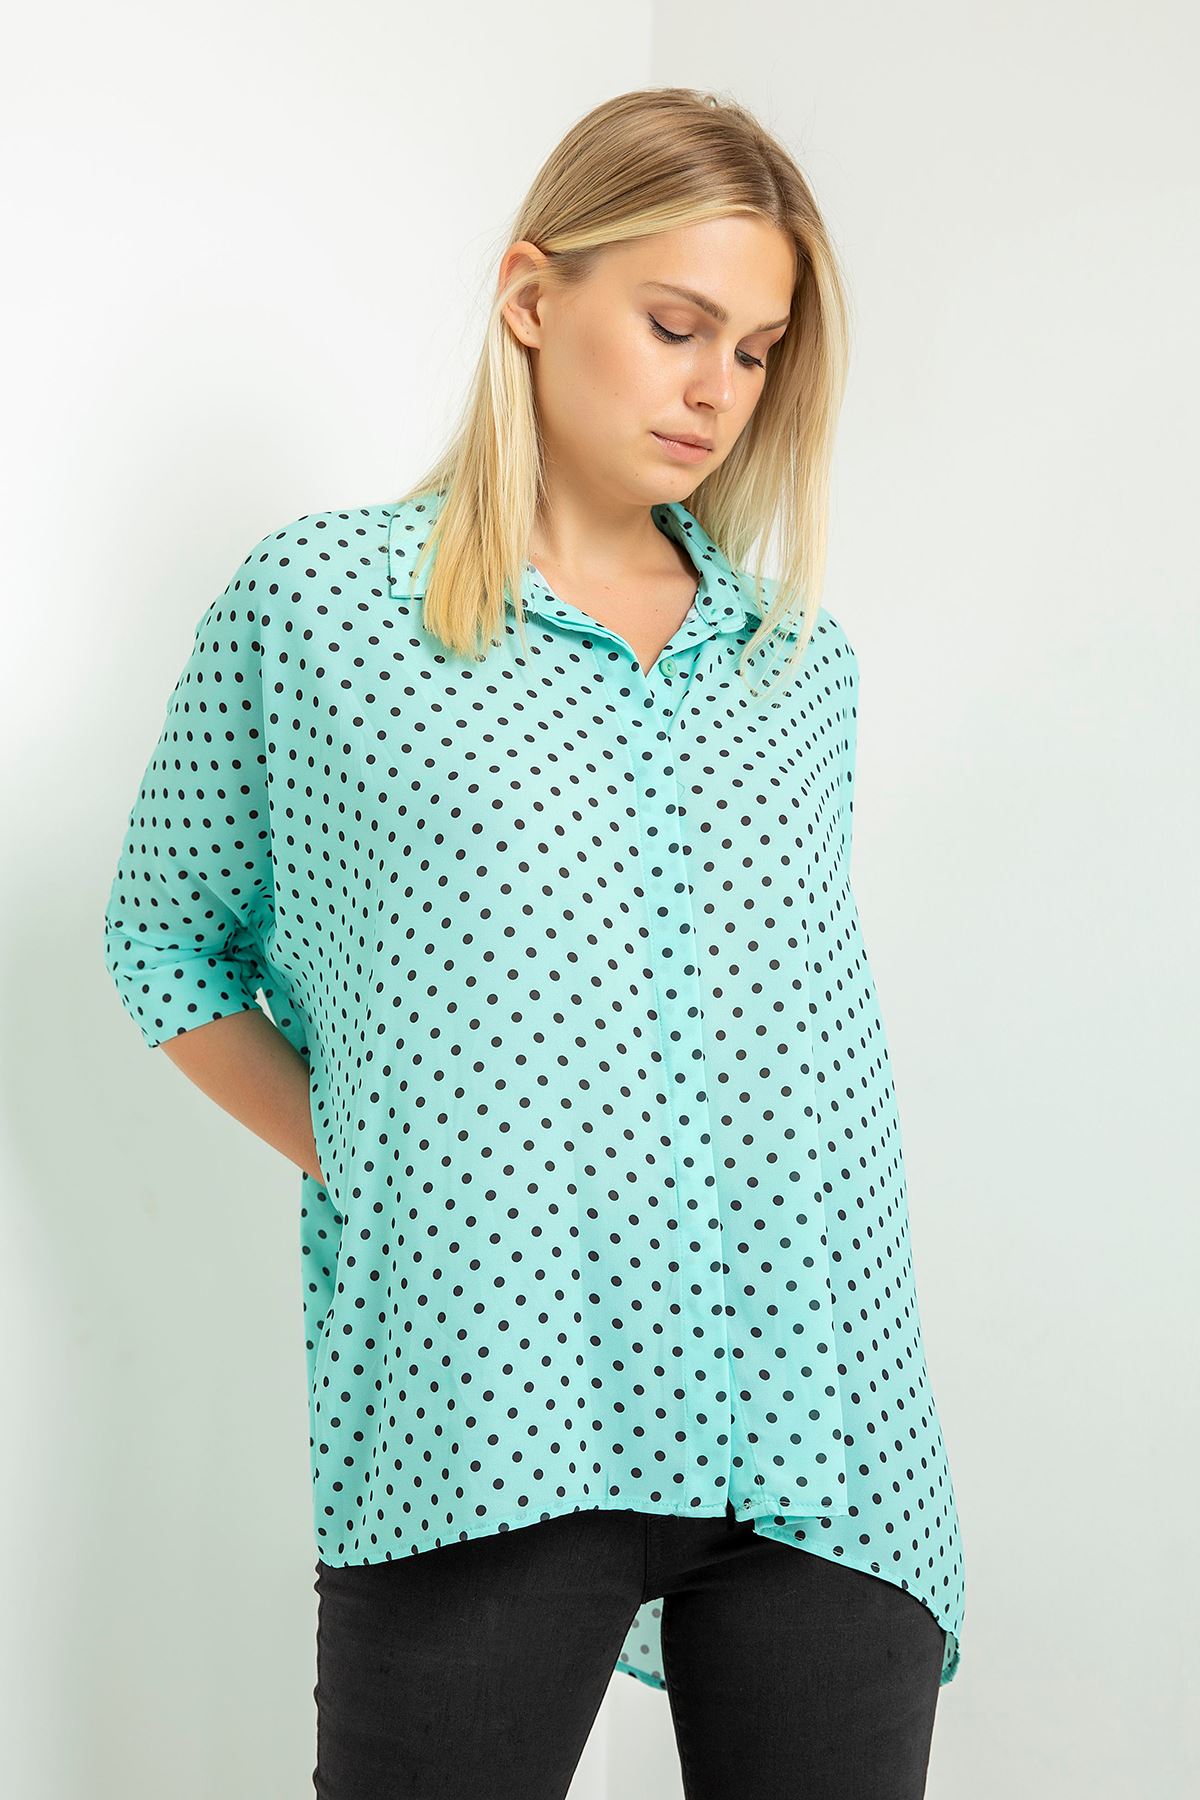 Jesica Fabric Wide Below Hip Oversize Polka-Dot Print Women'S Shirt - Mint